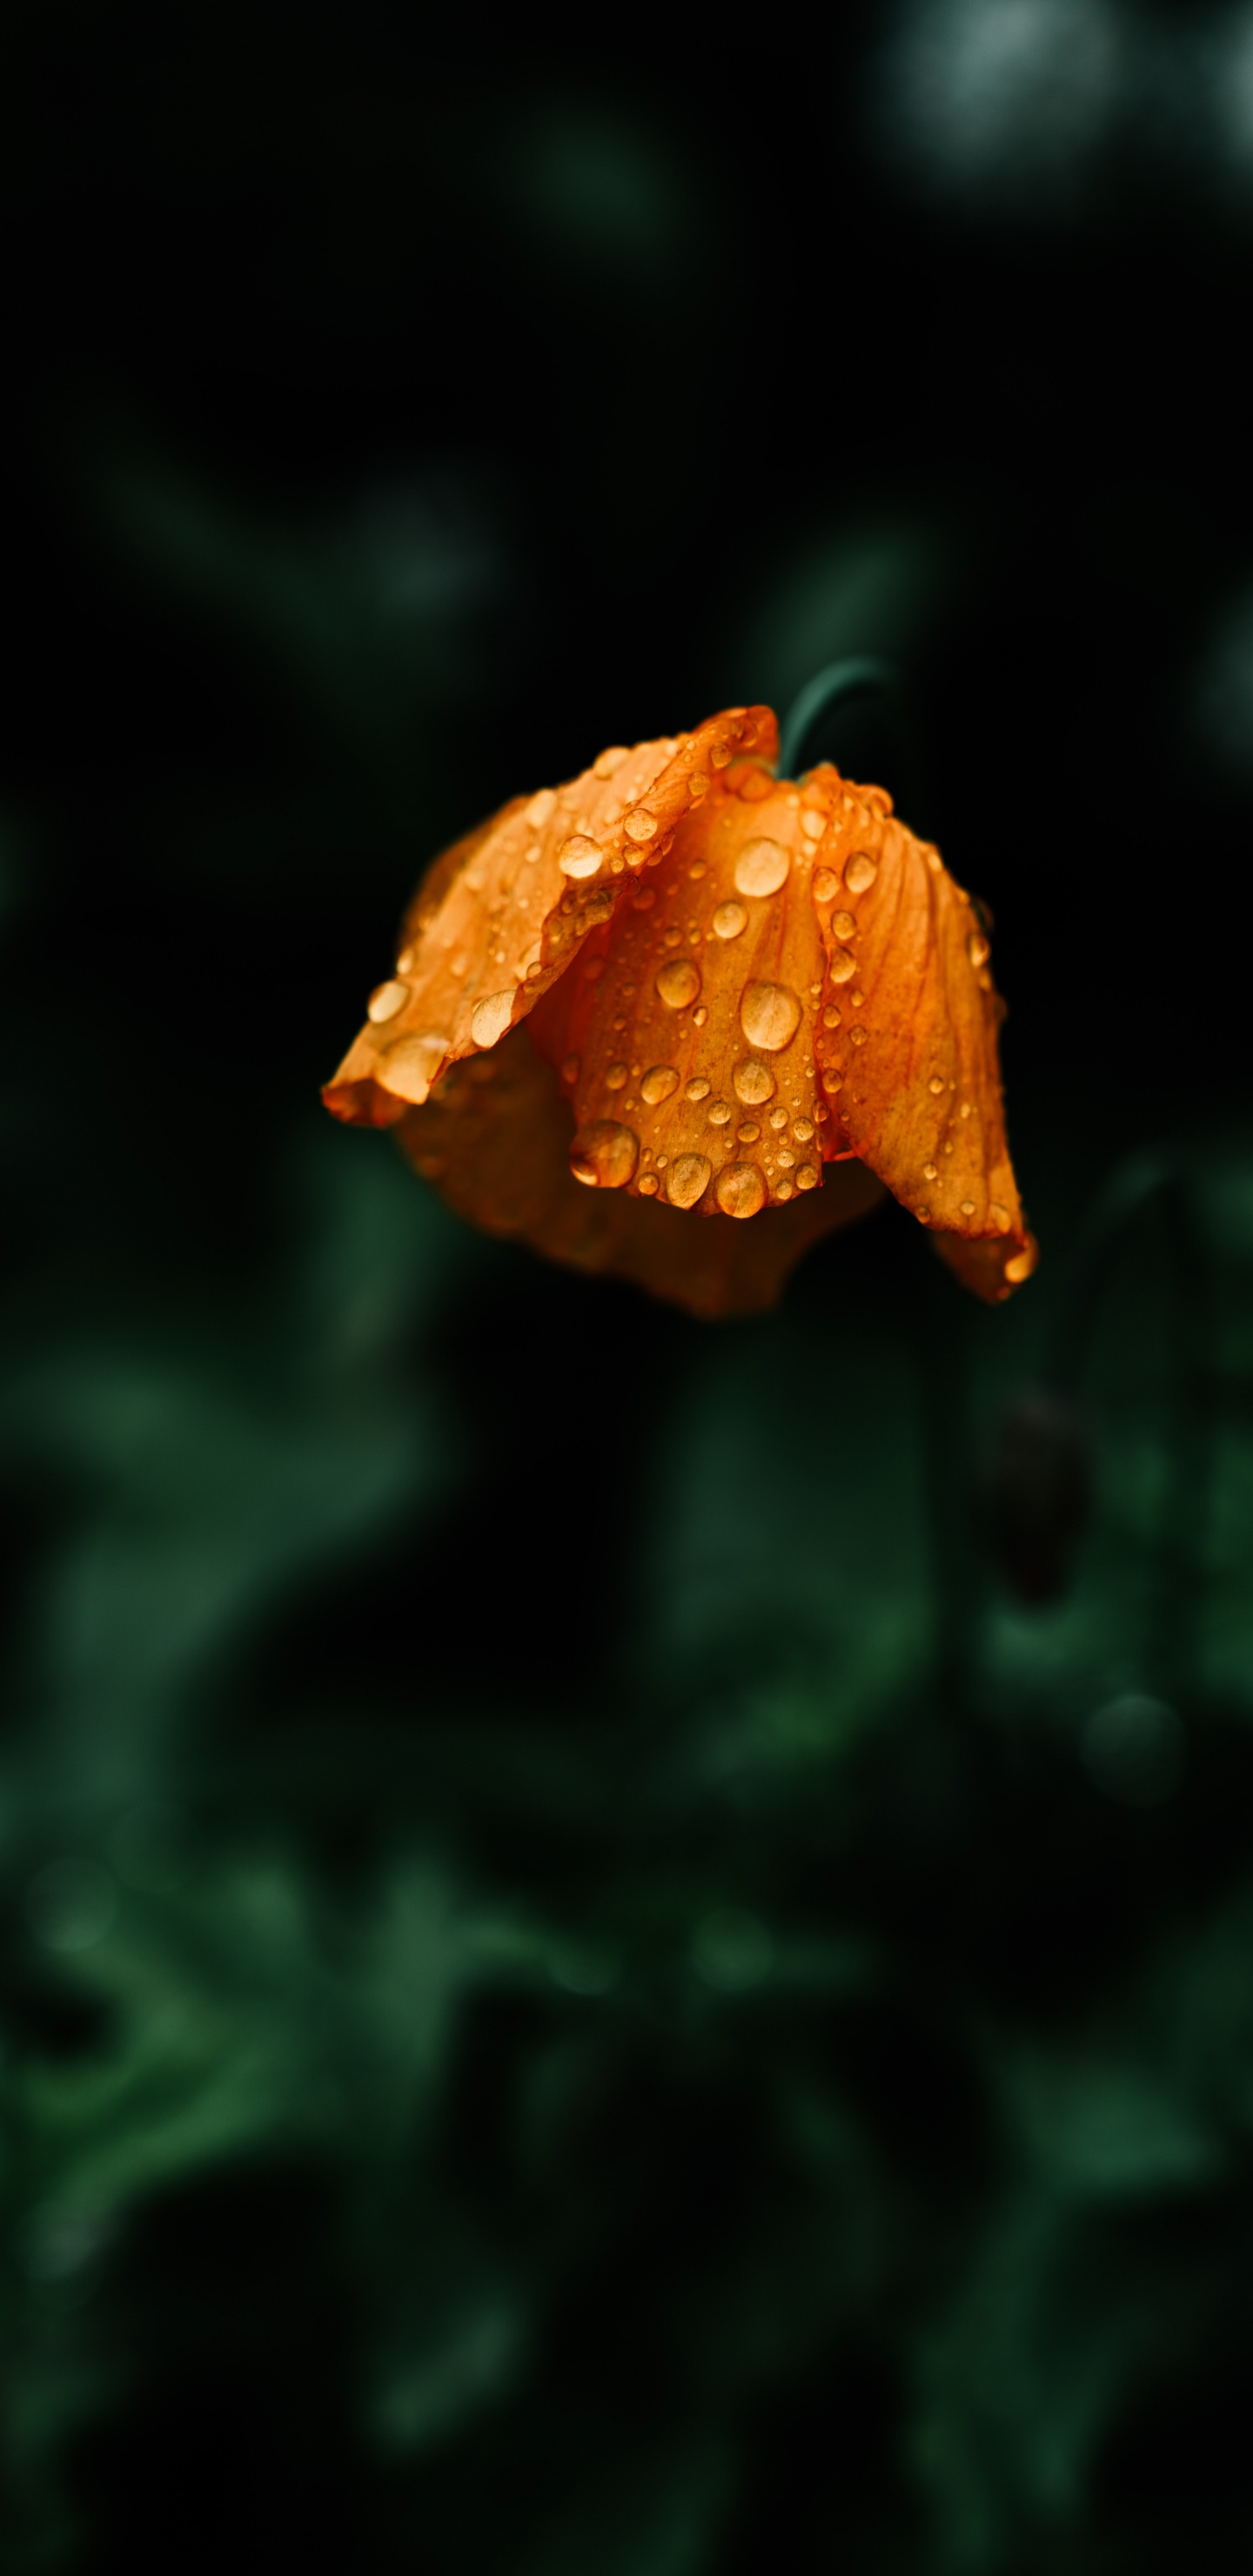 Orange Flower in Tilt Shift Lens. Wallpaper in 1440x2960 Resolution